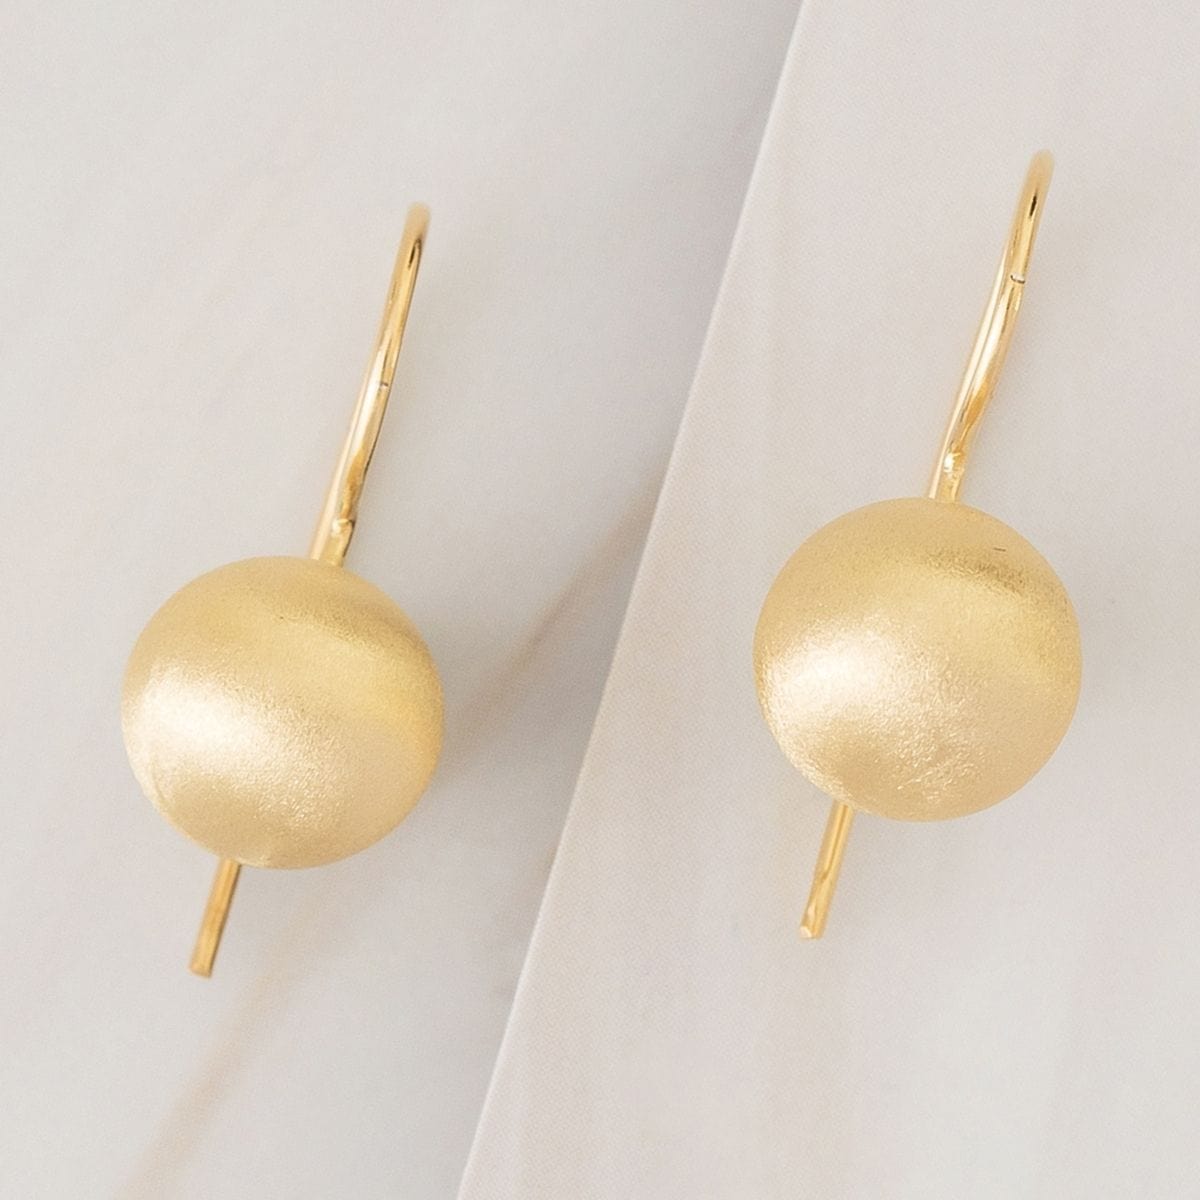 Emblem Jewelry Earrings Gold Tone / 10 mm Terrene Matte Ball Drop Earrings